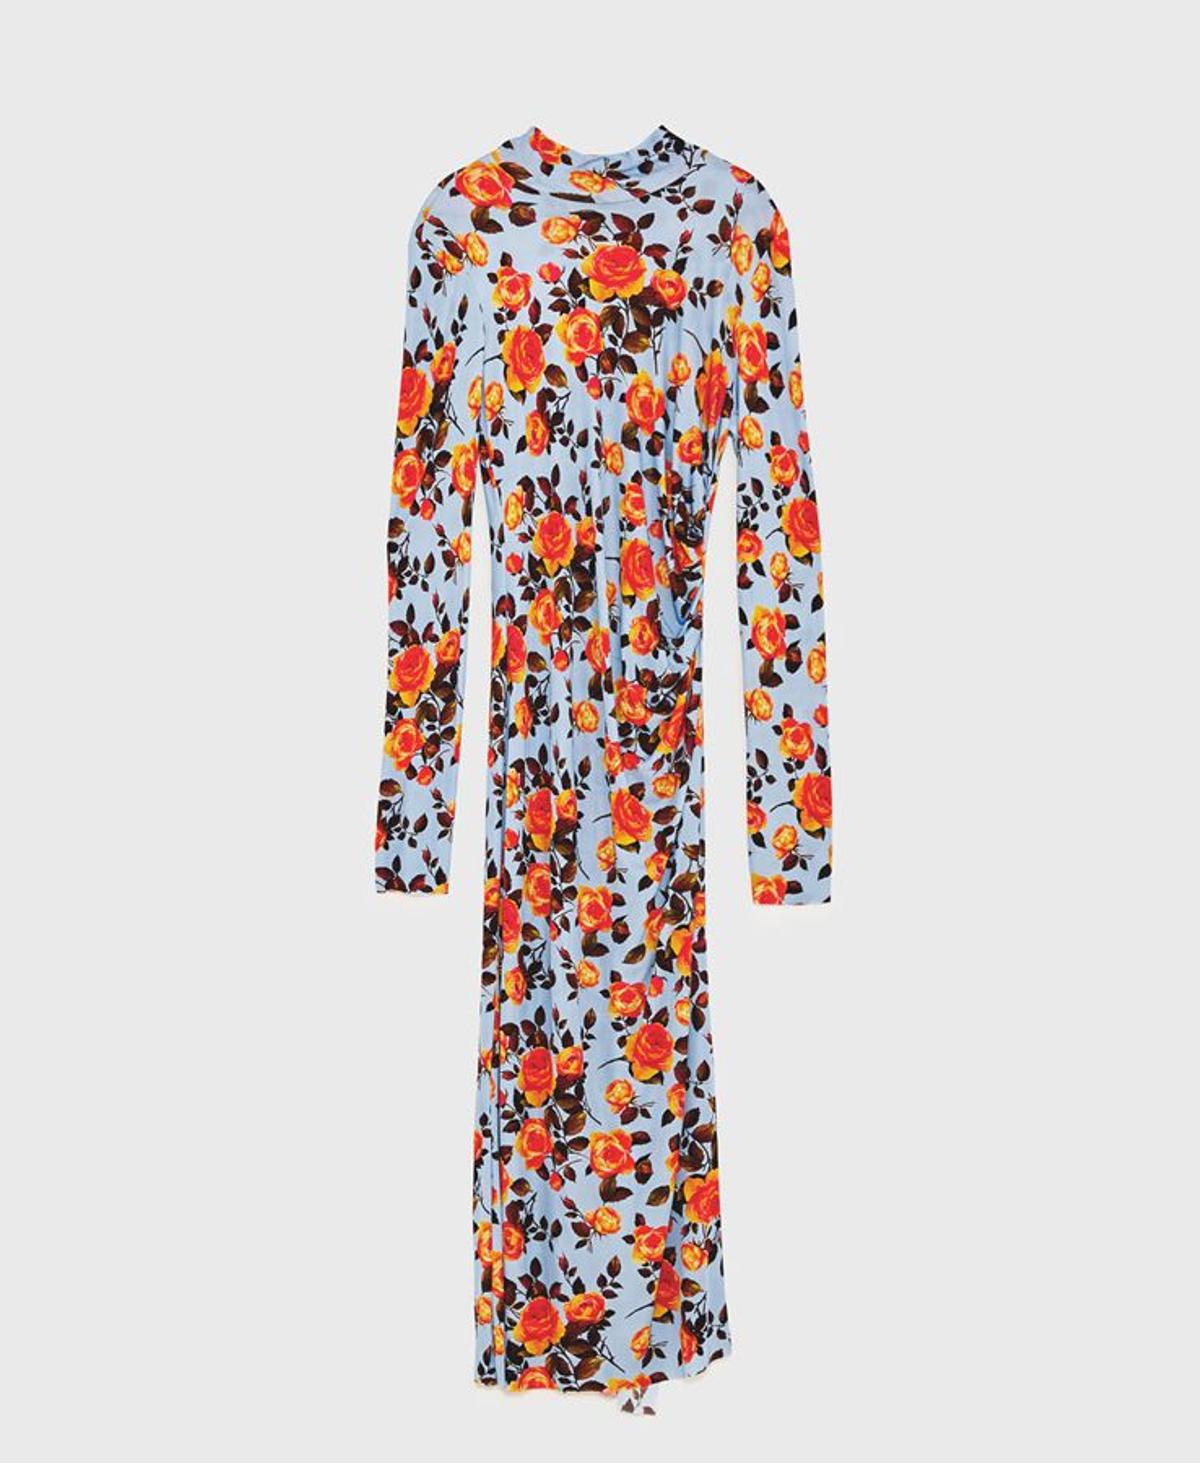 Zara Pre-fall 17: Vestido de estampado floral